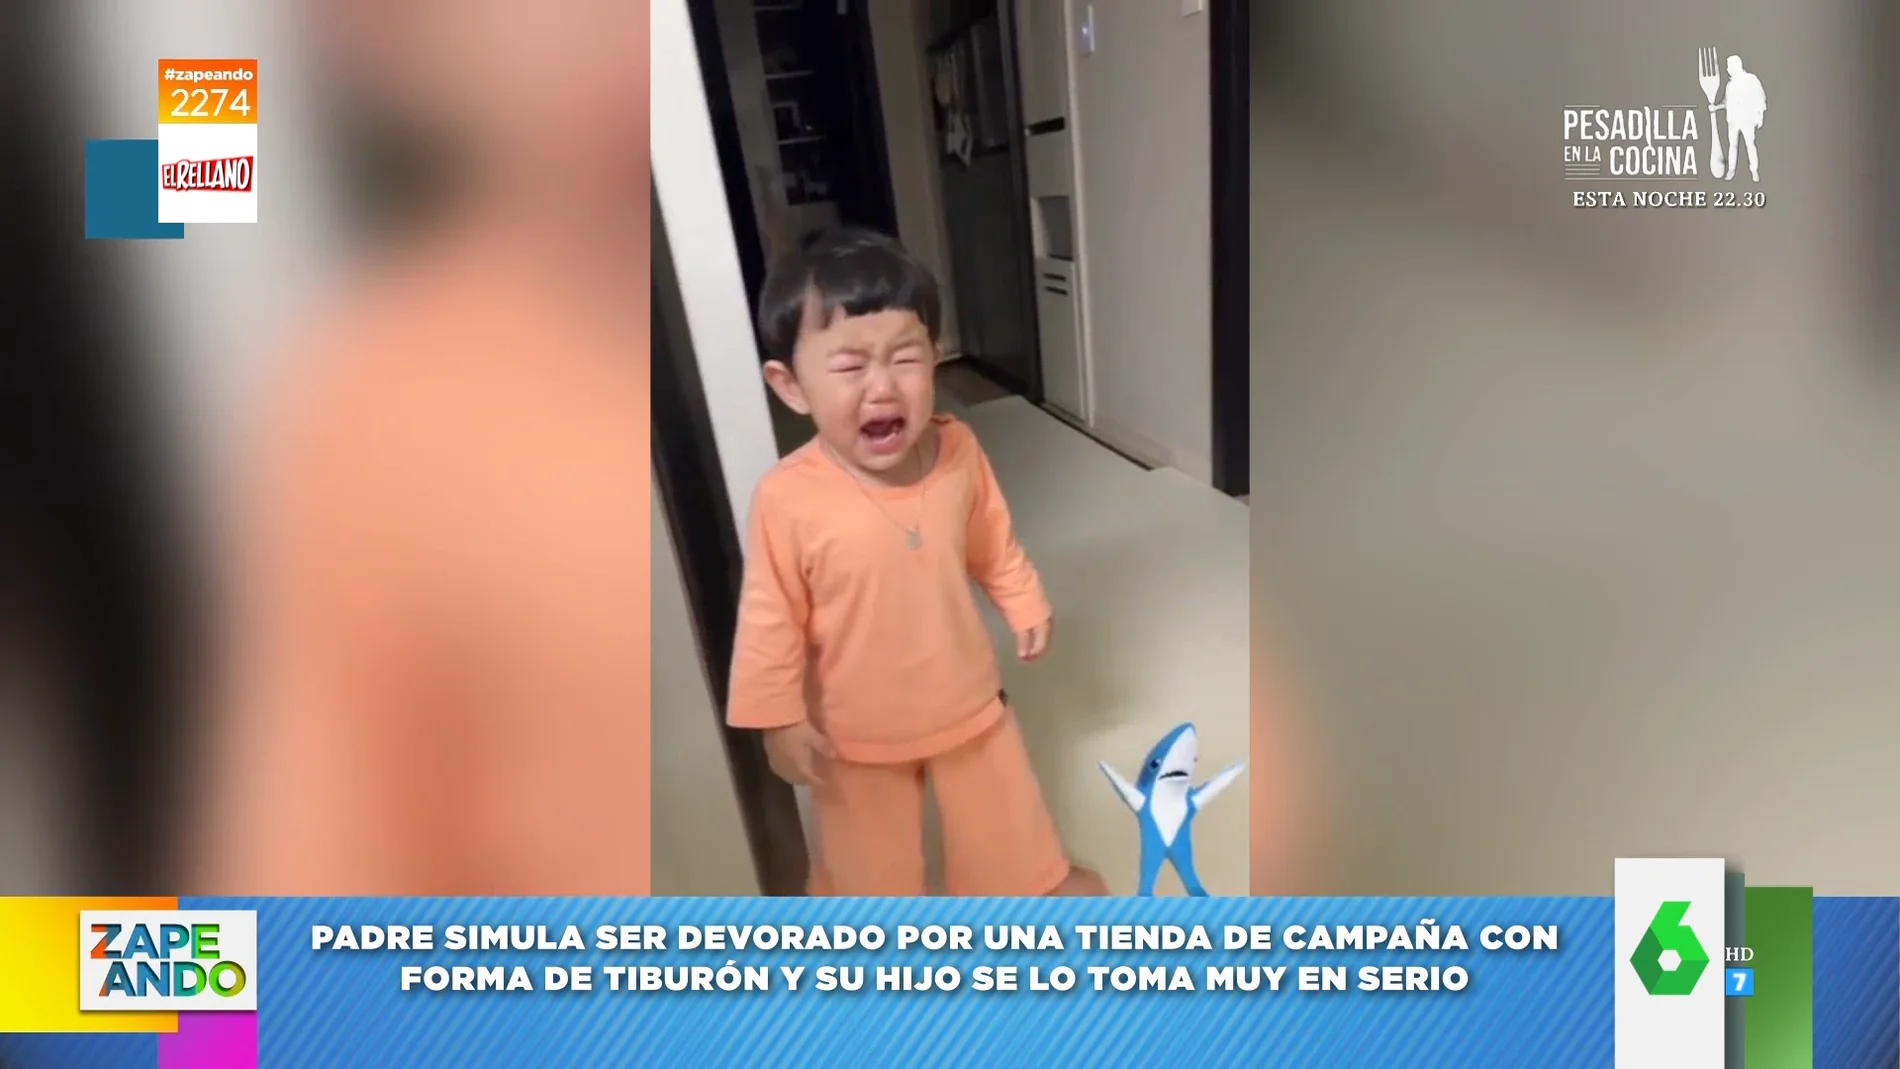 Las lágrimas de un niño al ver cómo su padre es devorado por un 'tiburón': "El padre es idiota" 